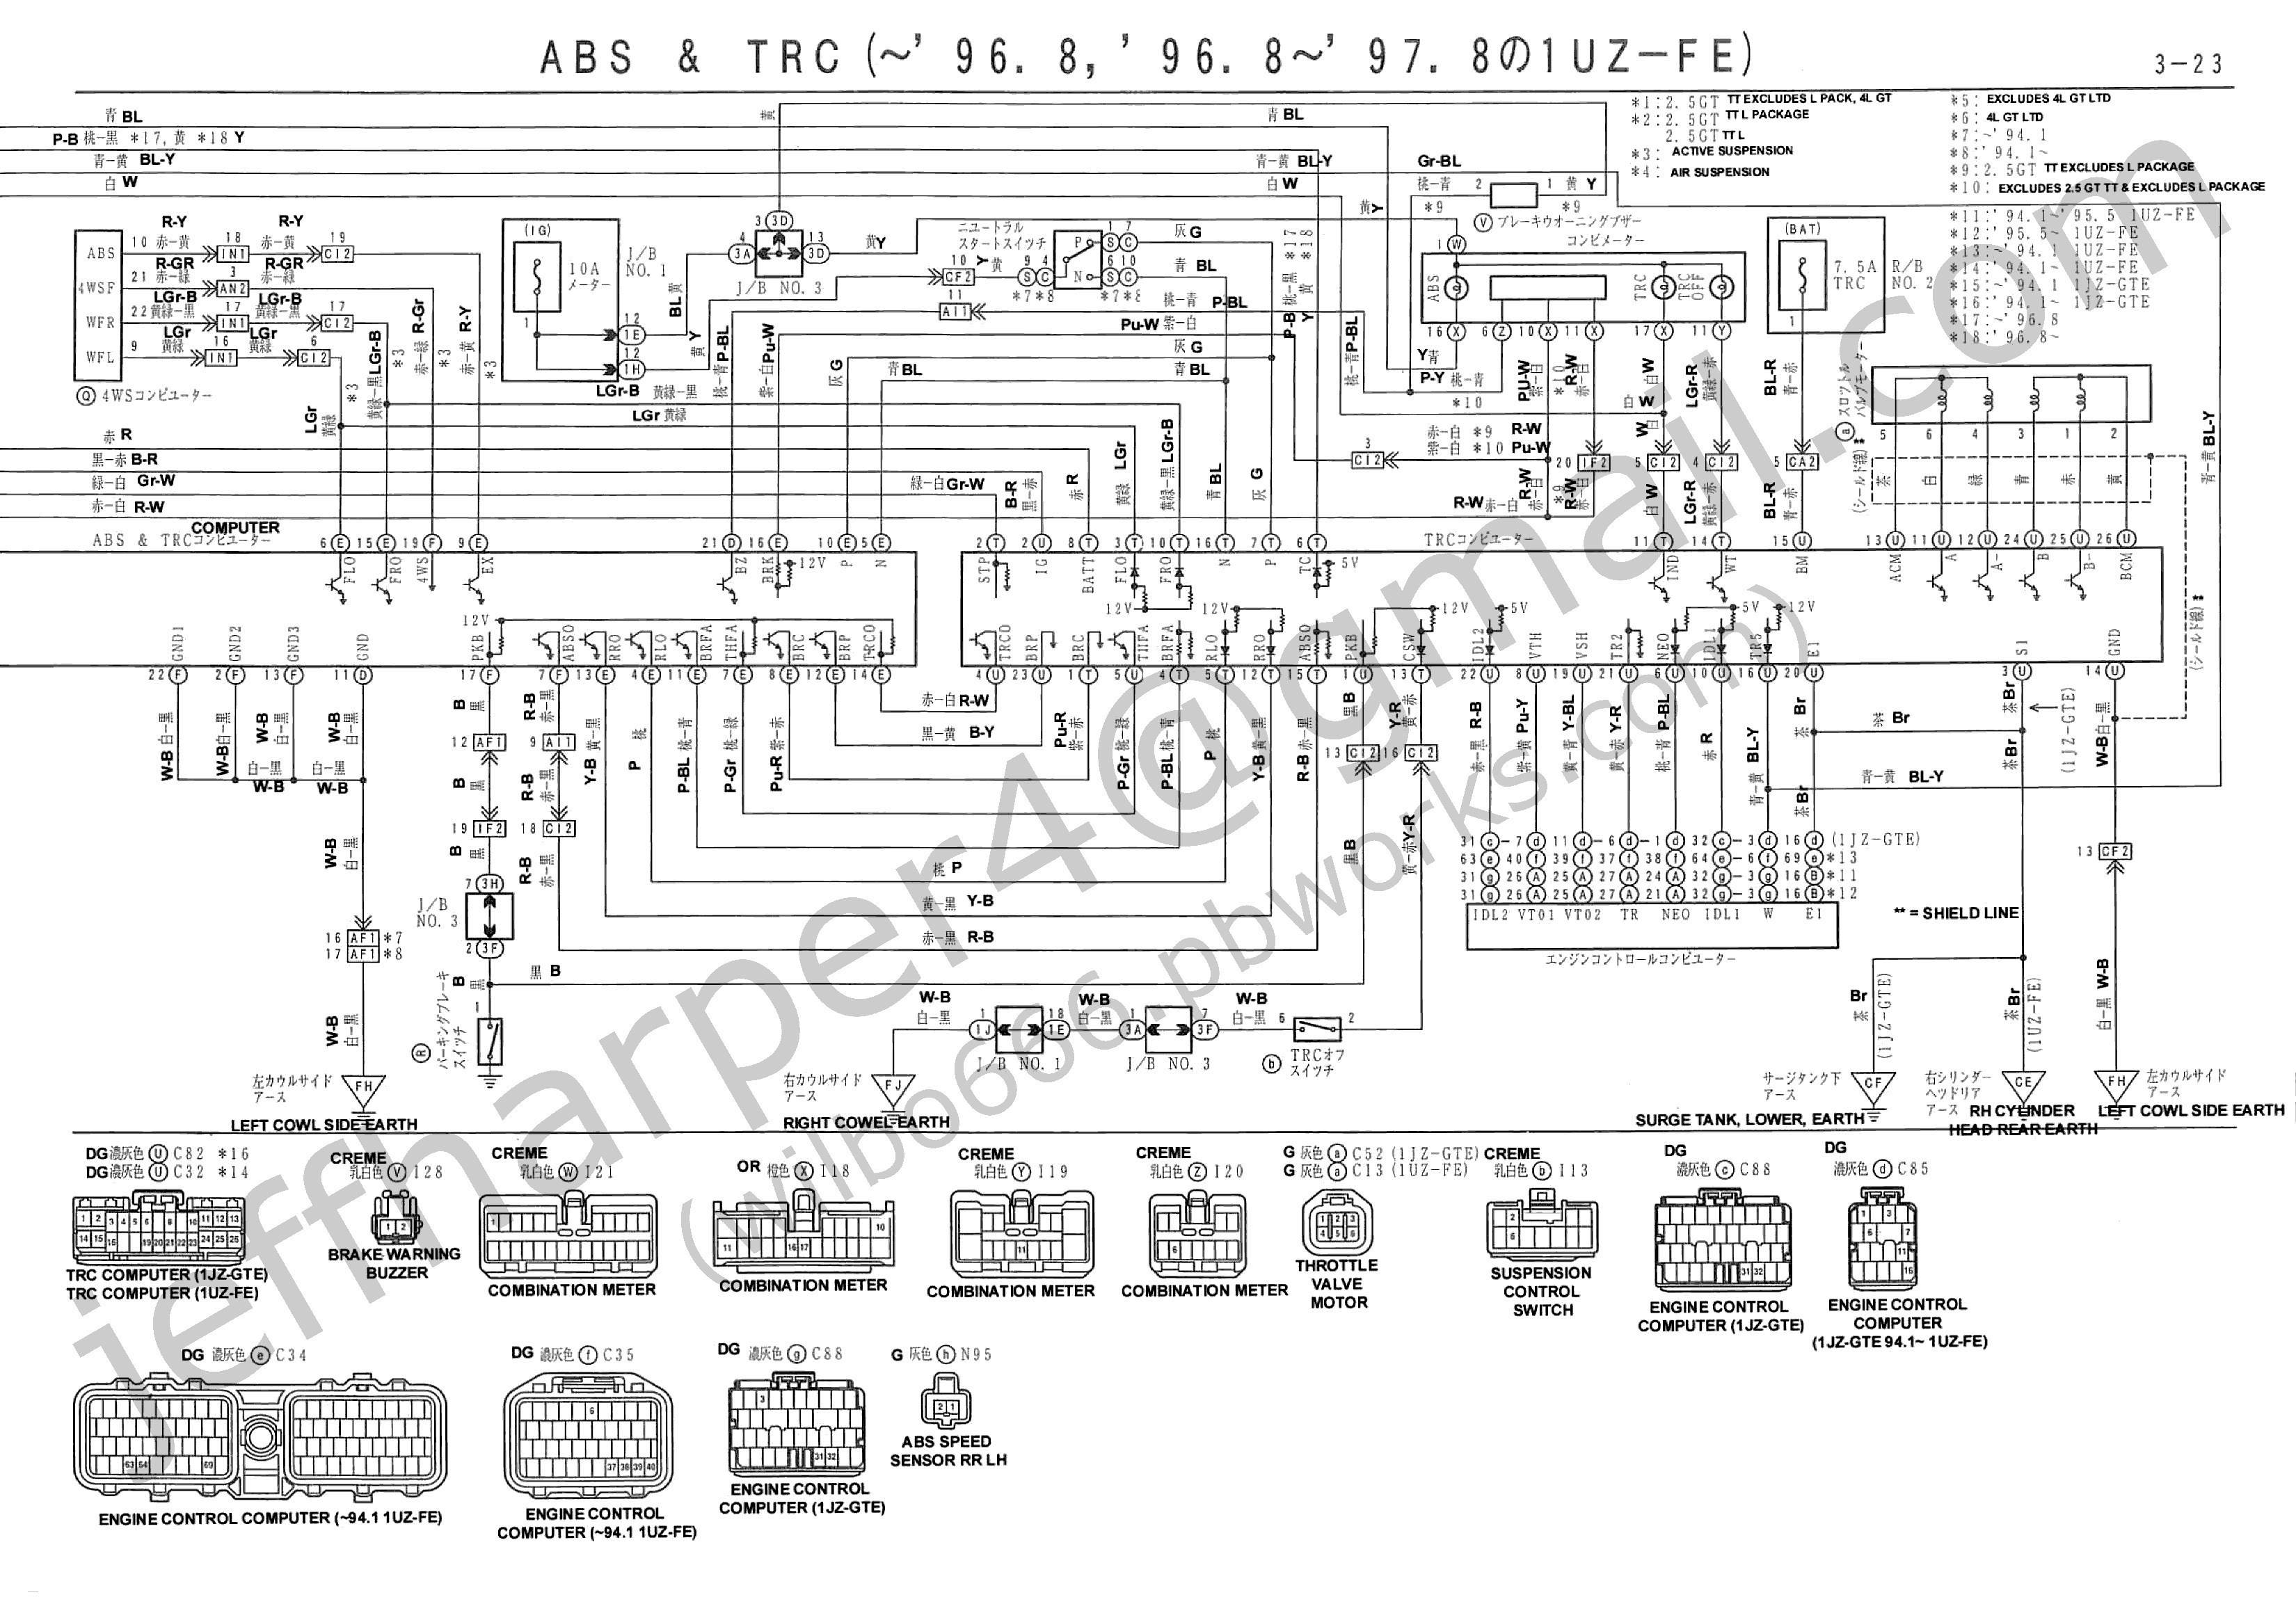 Basic Diesel Engine Wiring Diagram Diesel Generator Wiring Diagram Free Simple Circuit Diagram Of Basic Diesel Engine Wiring Diagram